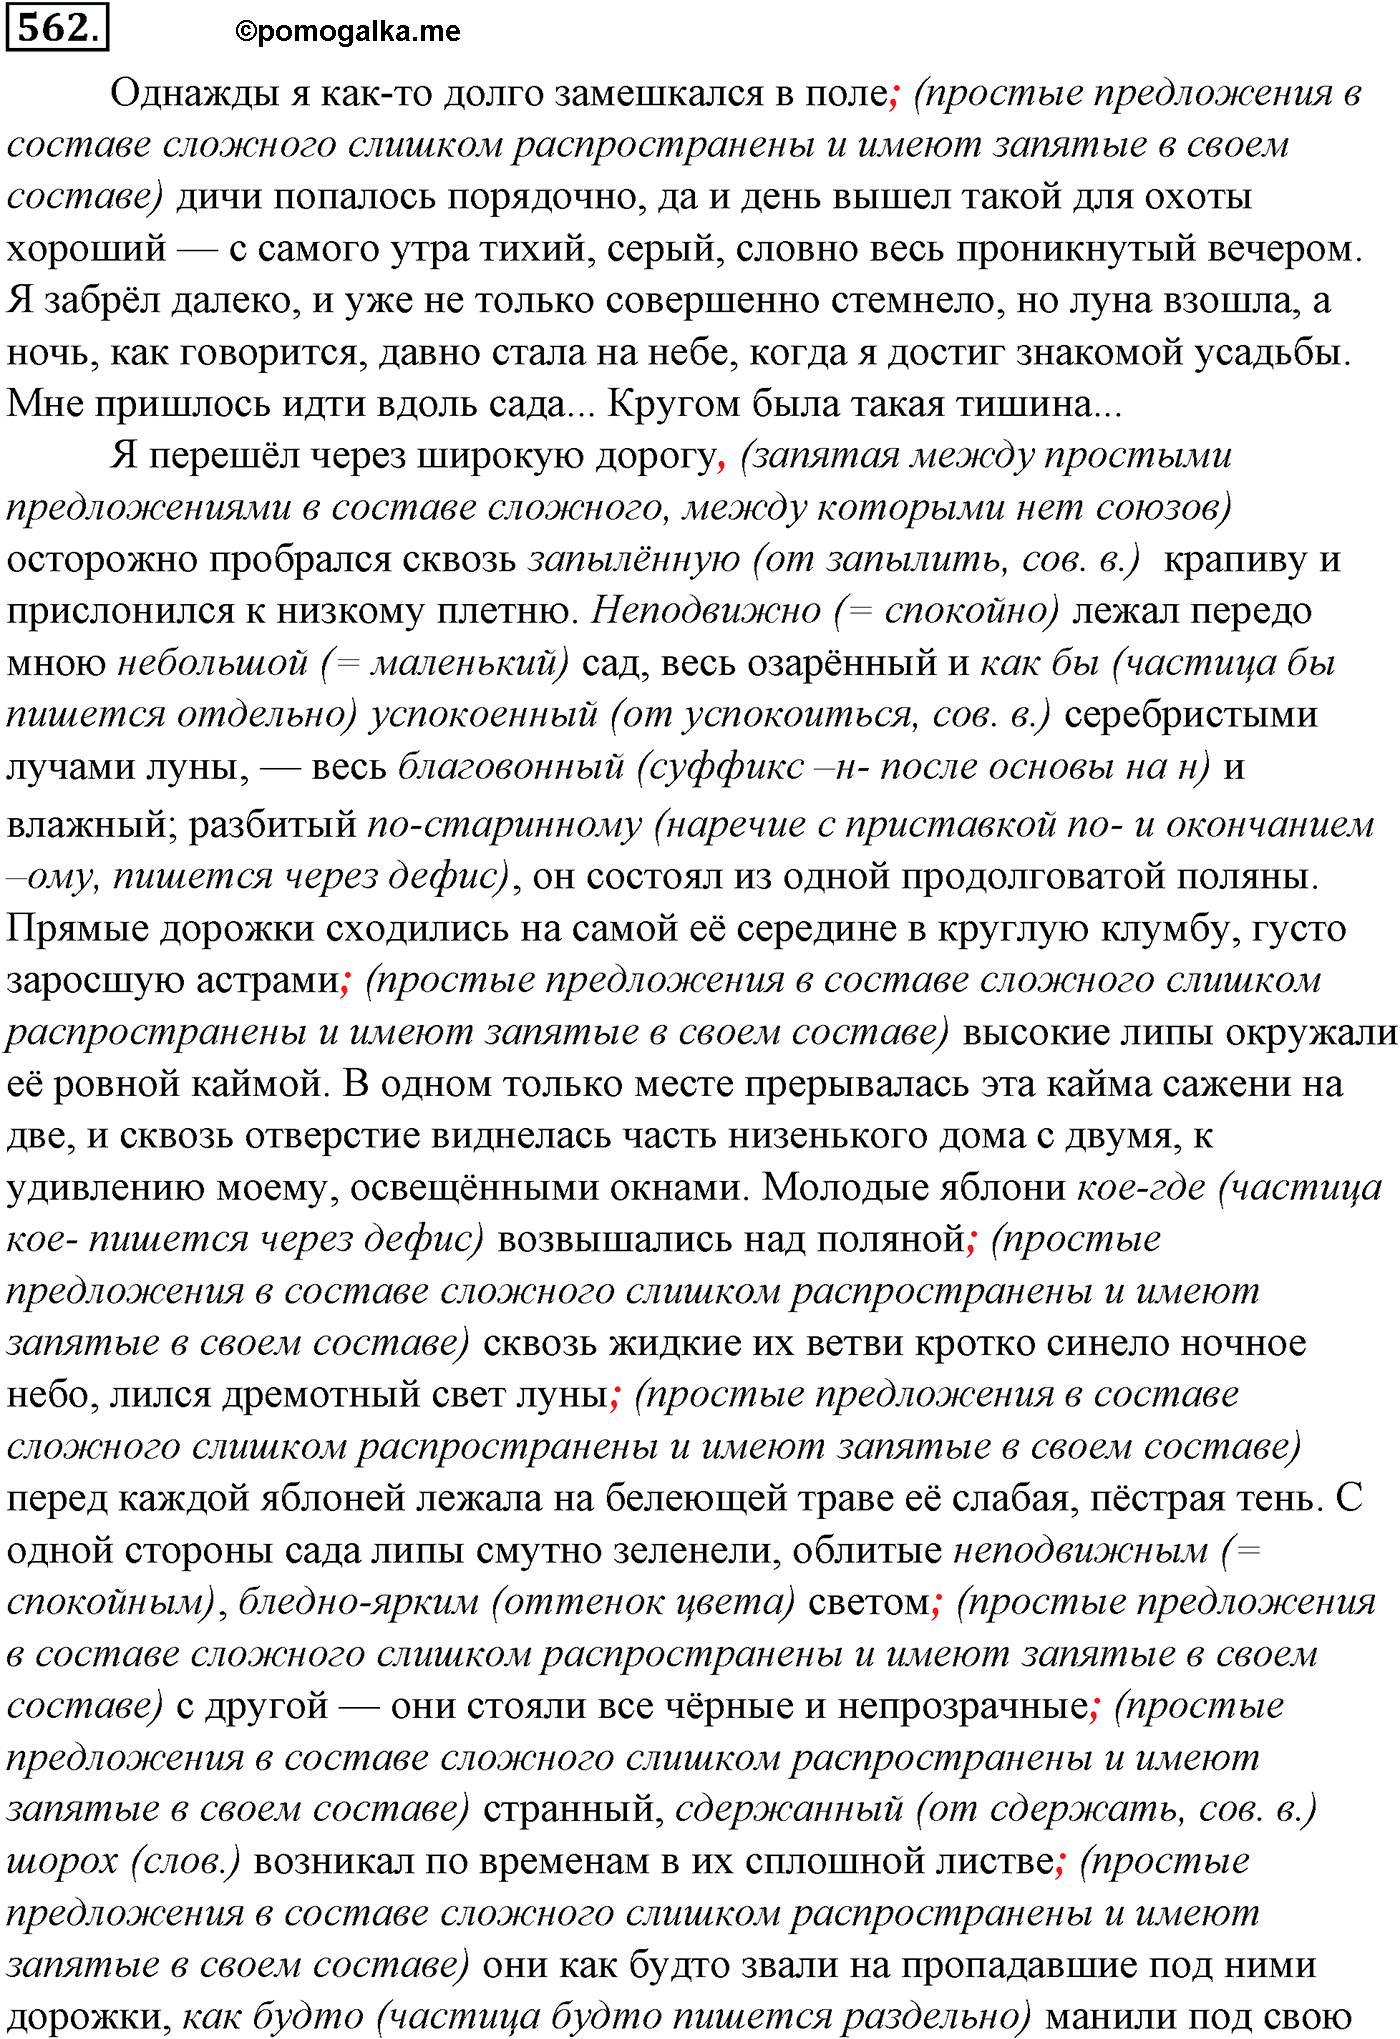 упражнение №562 русский язык 10-11 класс Гольцова